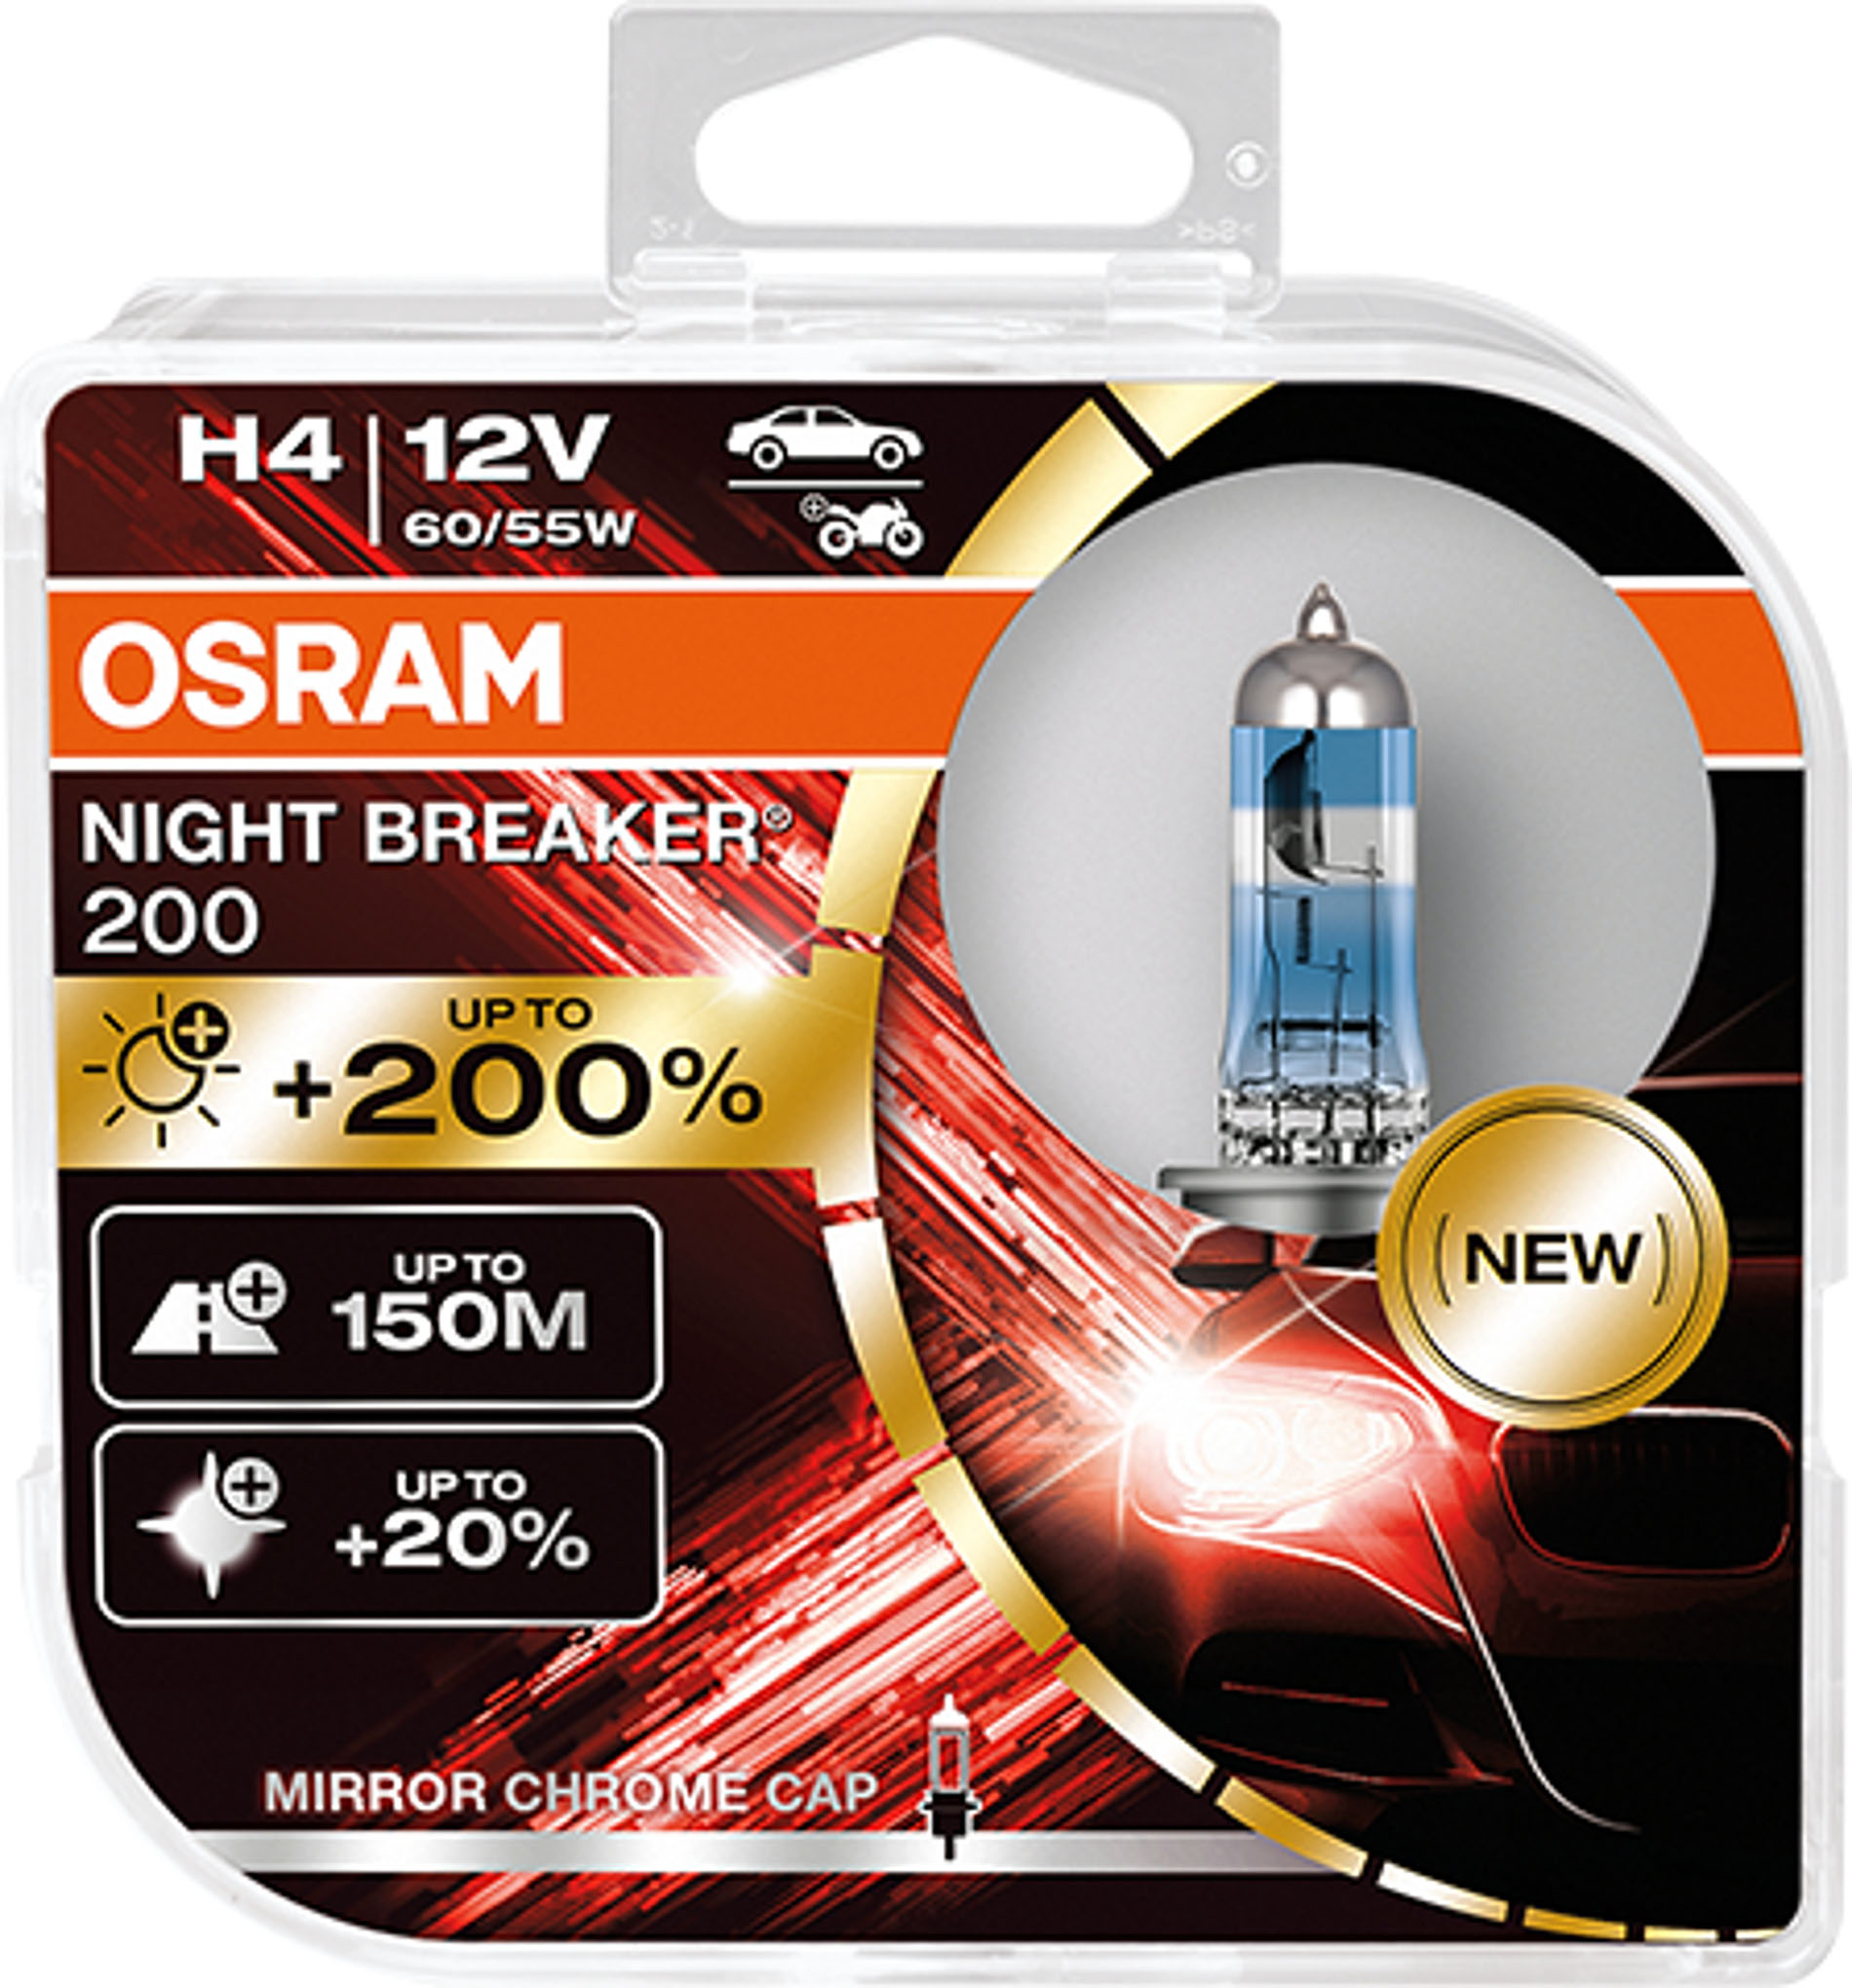 Night Breaker 200 – najjaśniejsze żarówki marki OSRAM